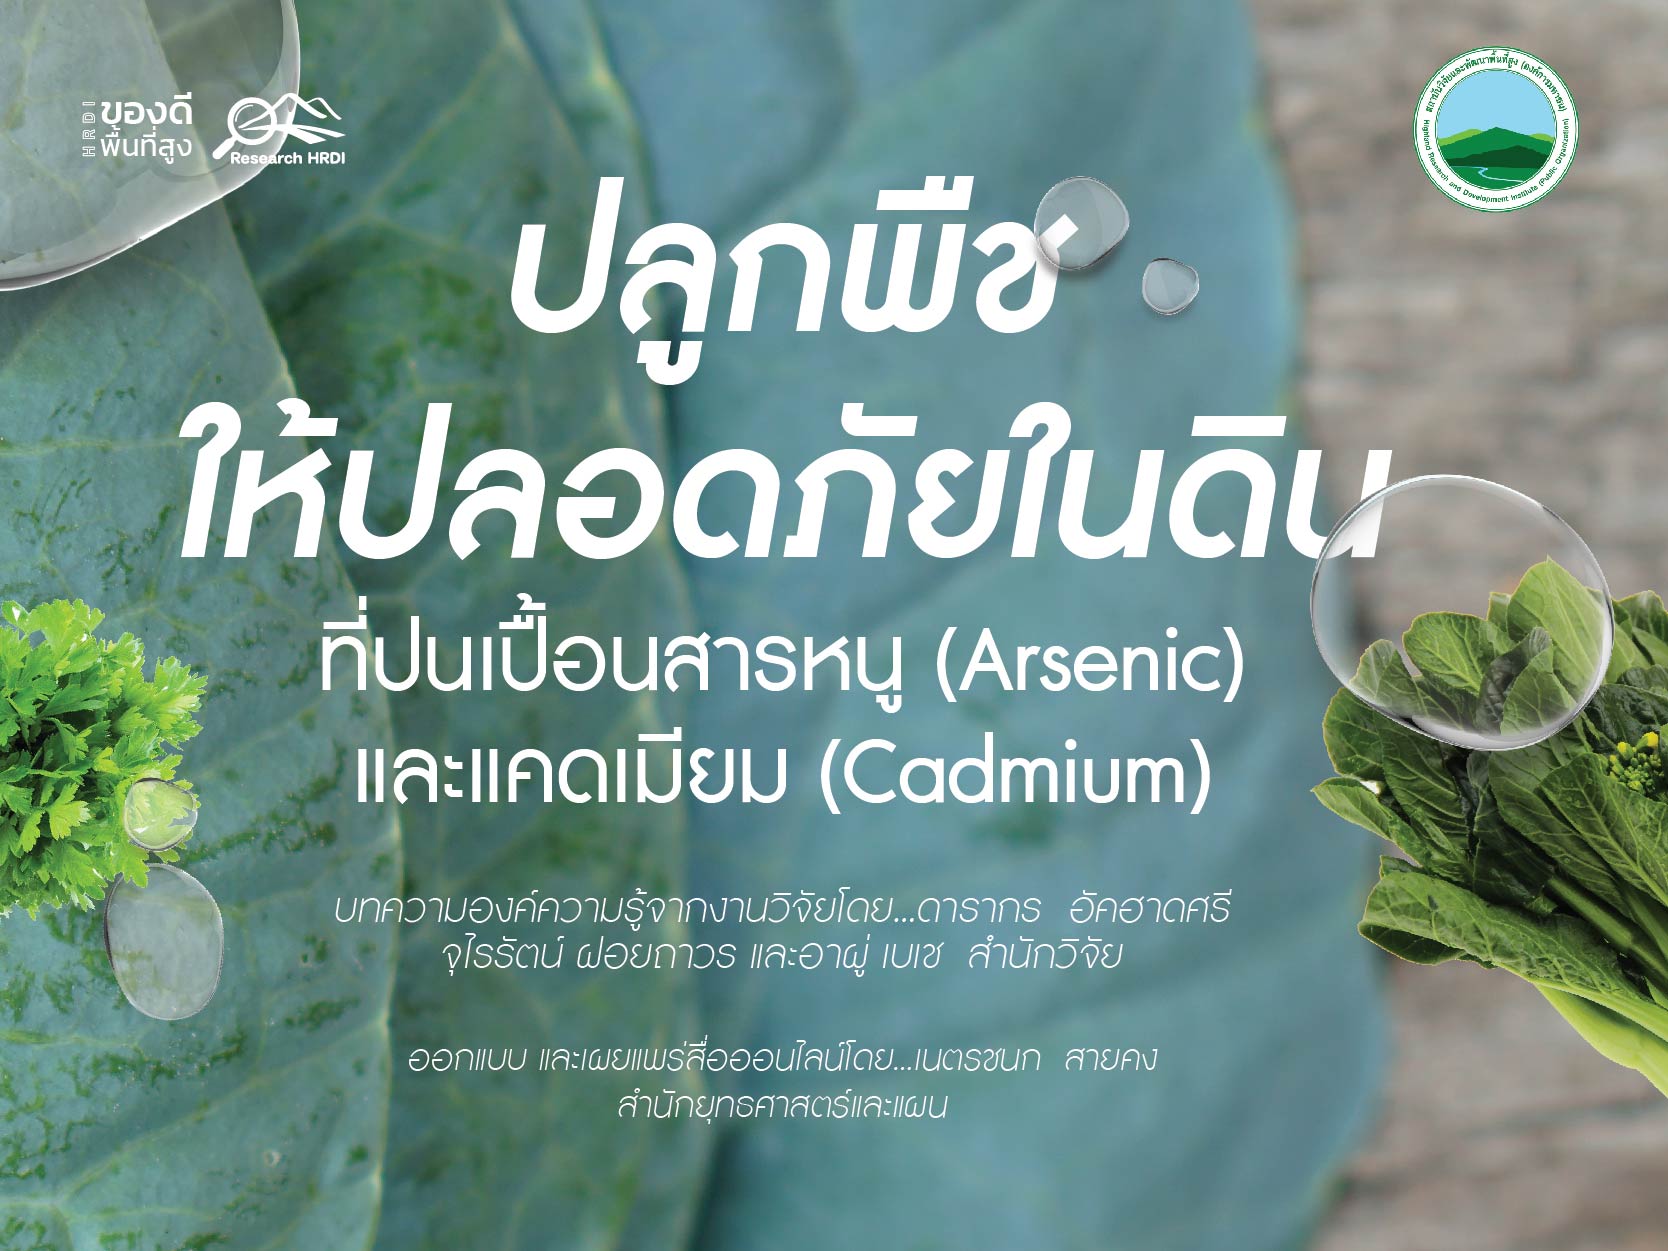 ปลูกพืชให้ปลอดภัยในดินที่ปนเปื้อนสารหนู (Arsenic) และแคดเมียม (Cadmium)